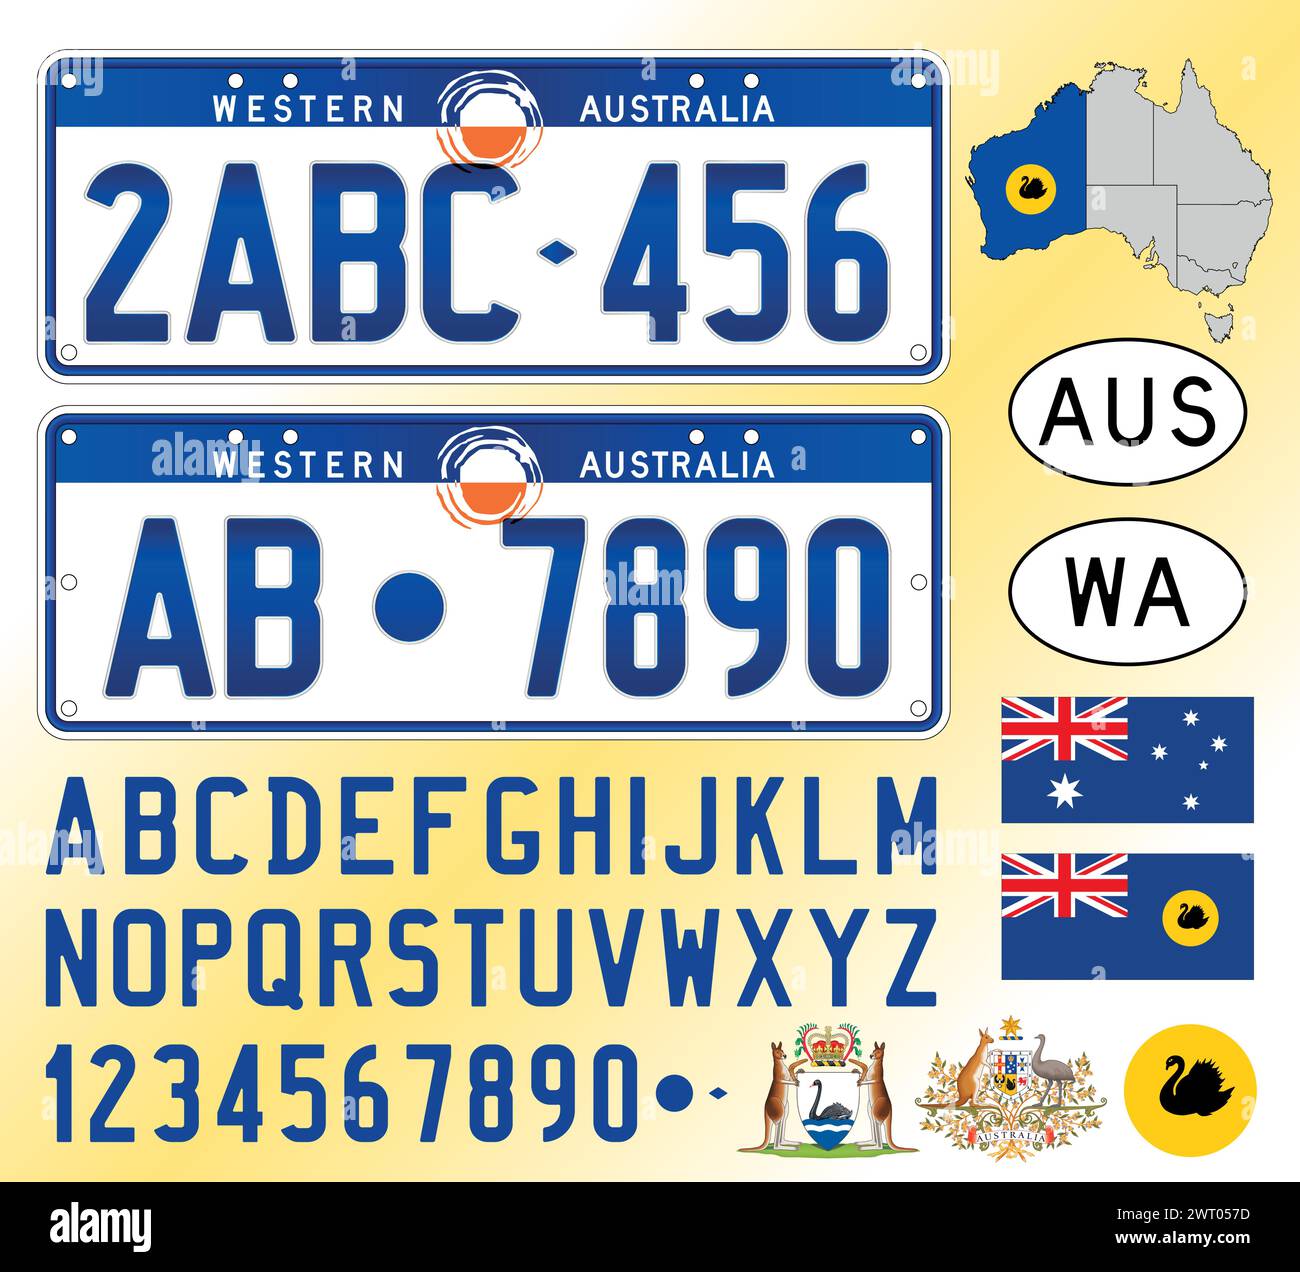 Modèle de plaque d'immatriculation de voiture d'Australie occidentale, lettres, chiffres et symboles, illustration vectorielle, Australie Illustration de Vecteur